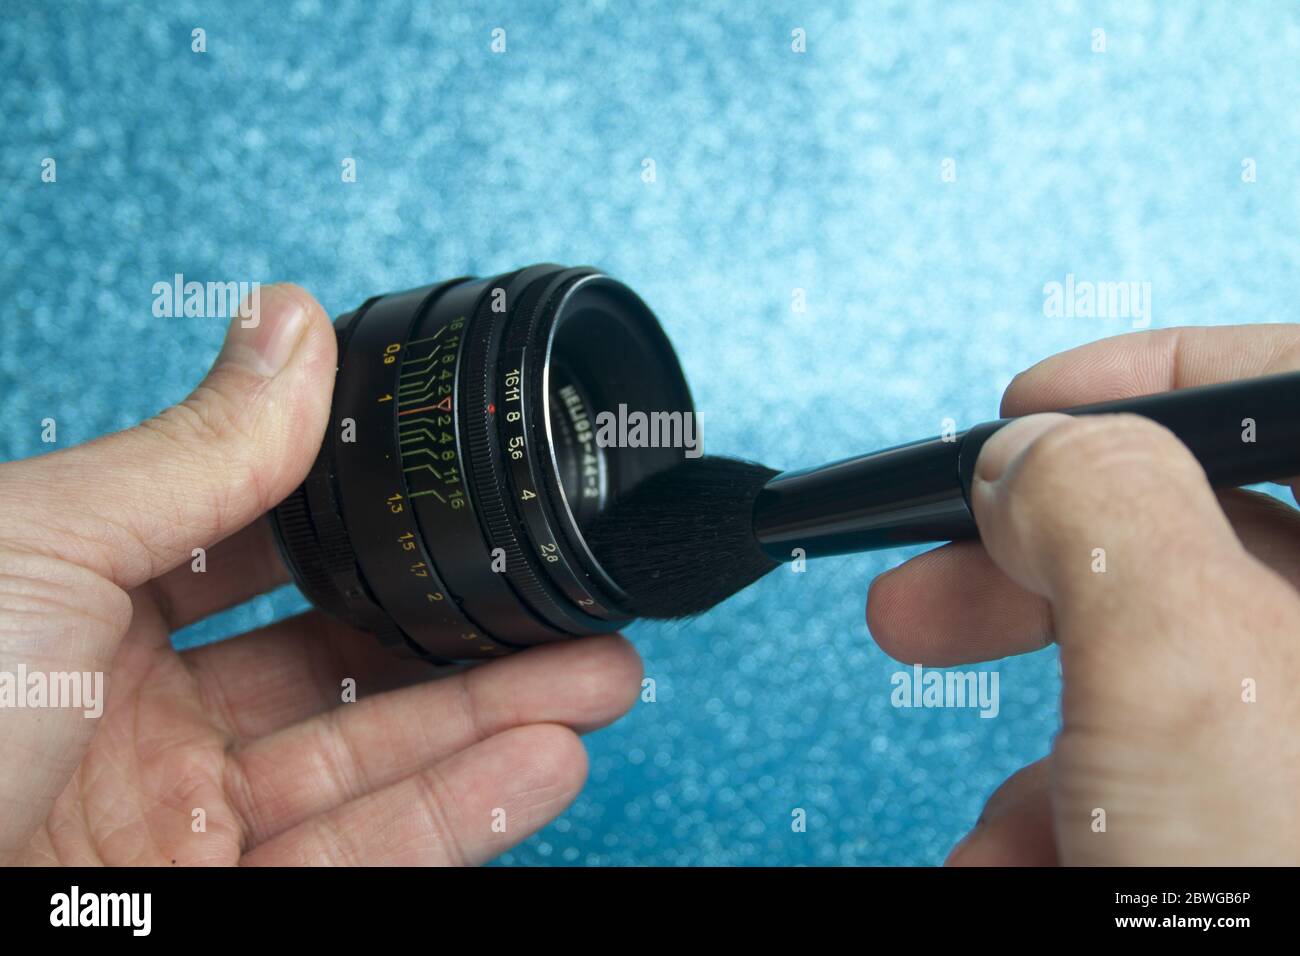 Mani che tengono una spazzola cosmetica e la puliscono con una vecchia lente manuale su sfondo blu. Foto Stock